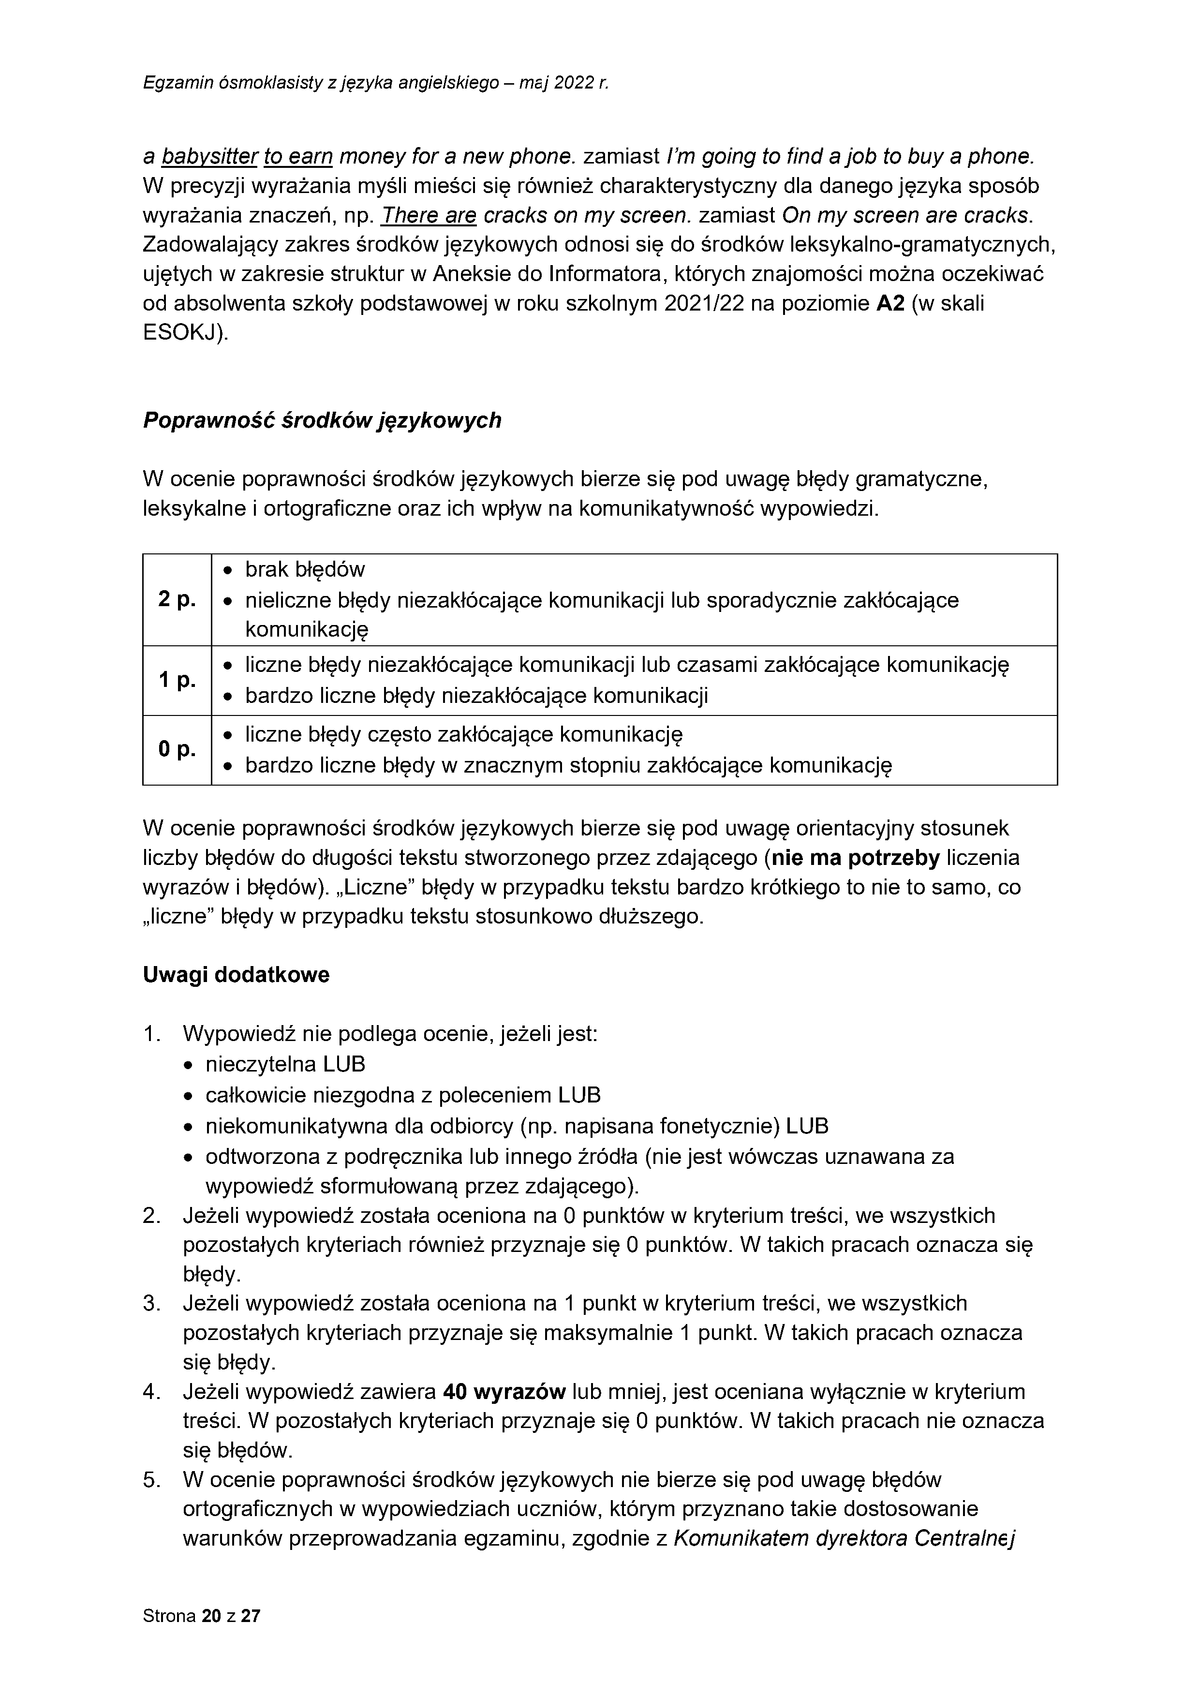 zasady oceniania - odpowiedzi - język angielski - egzamin ósmoklasisty 2022 - 0020